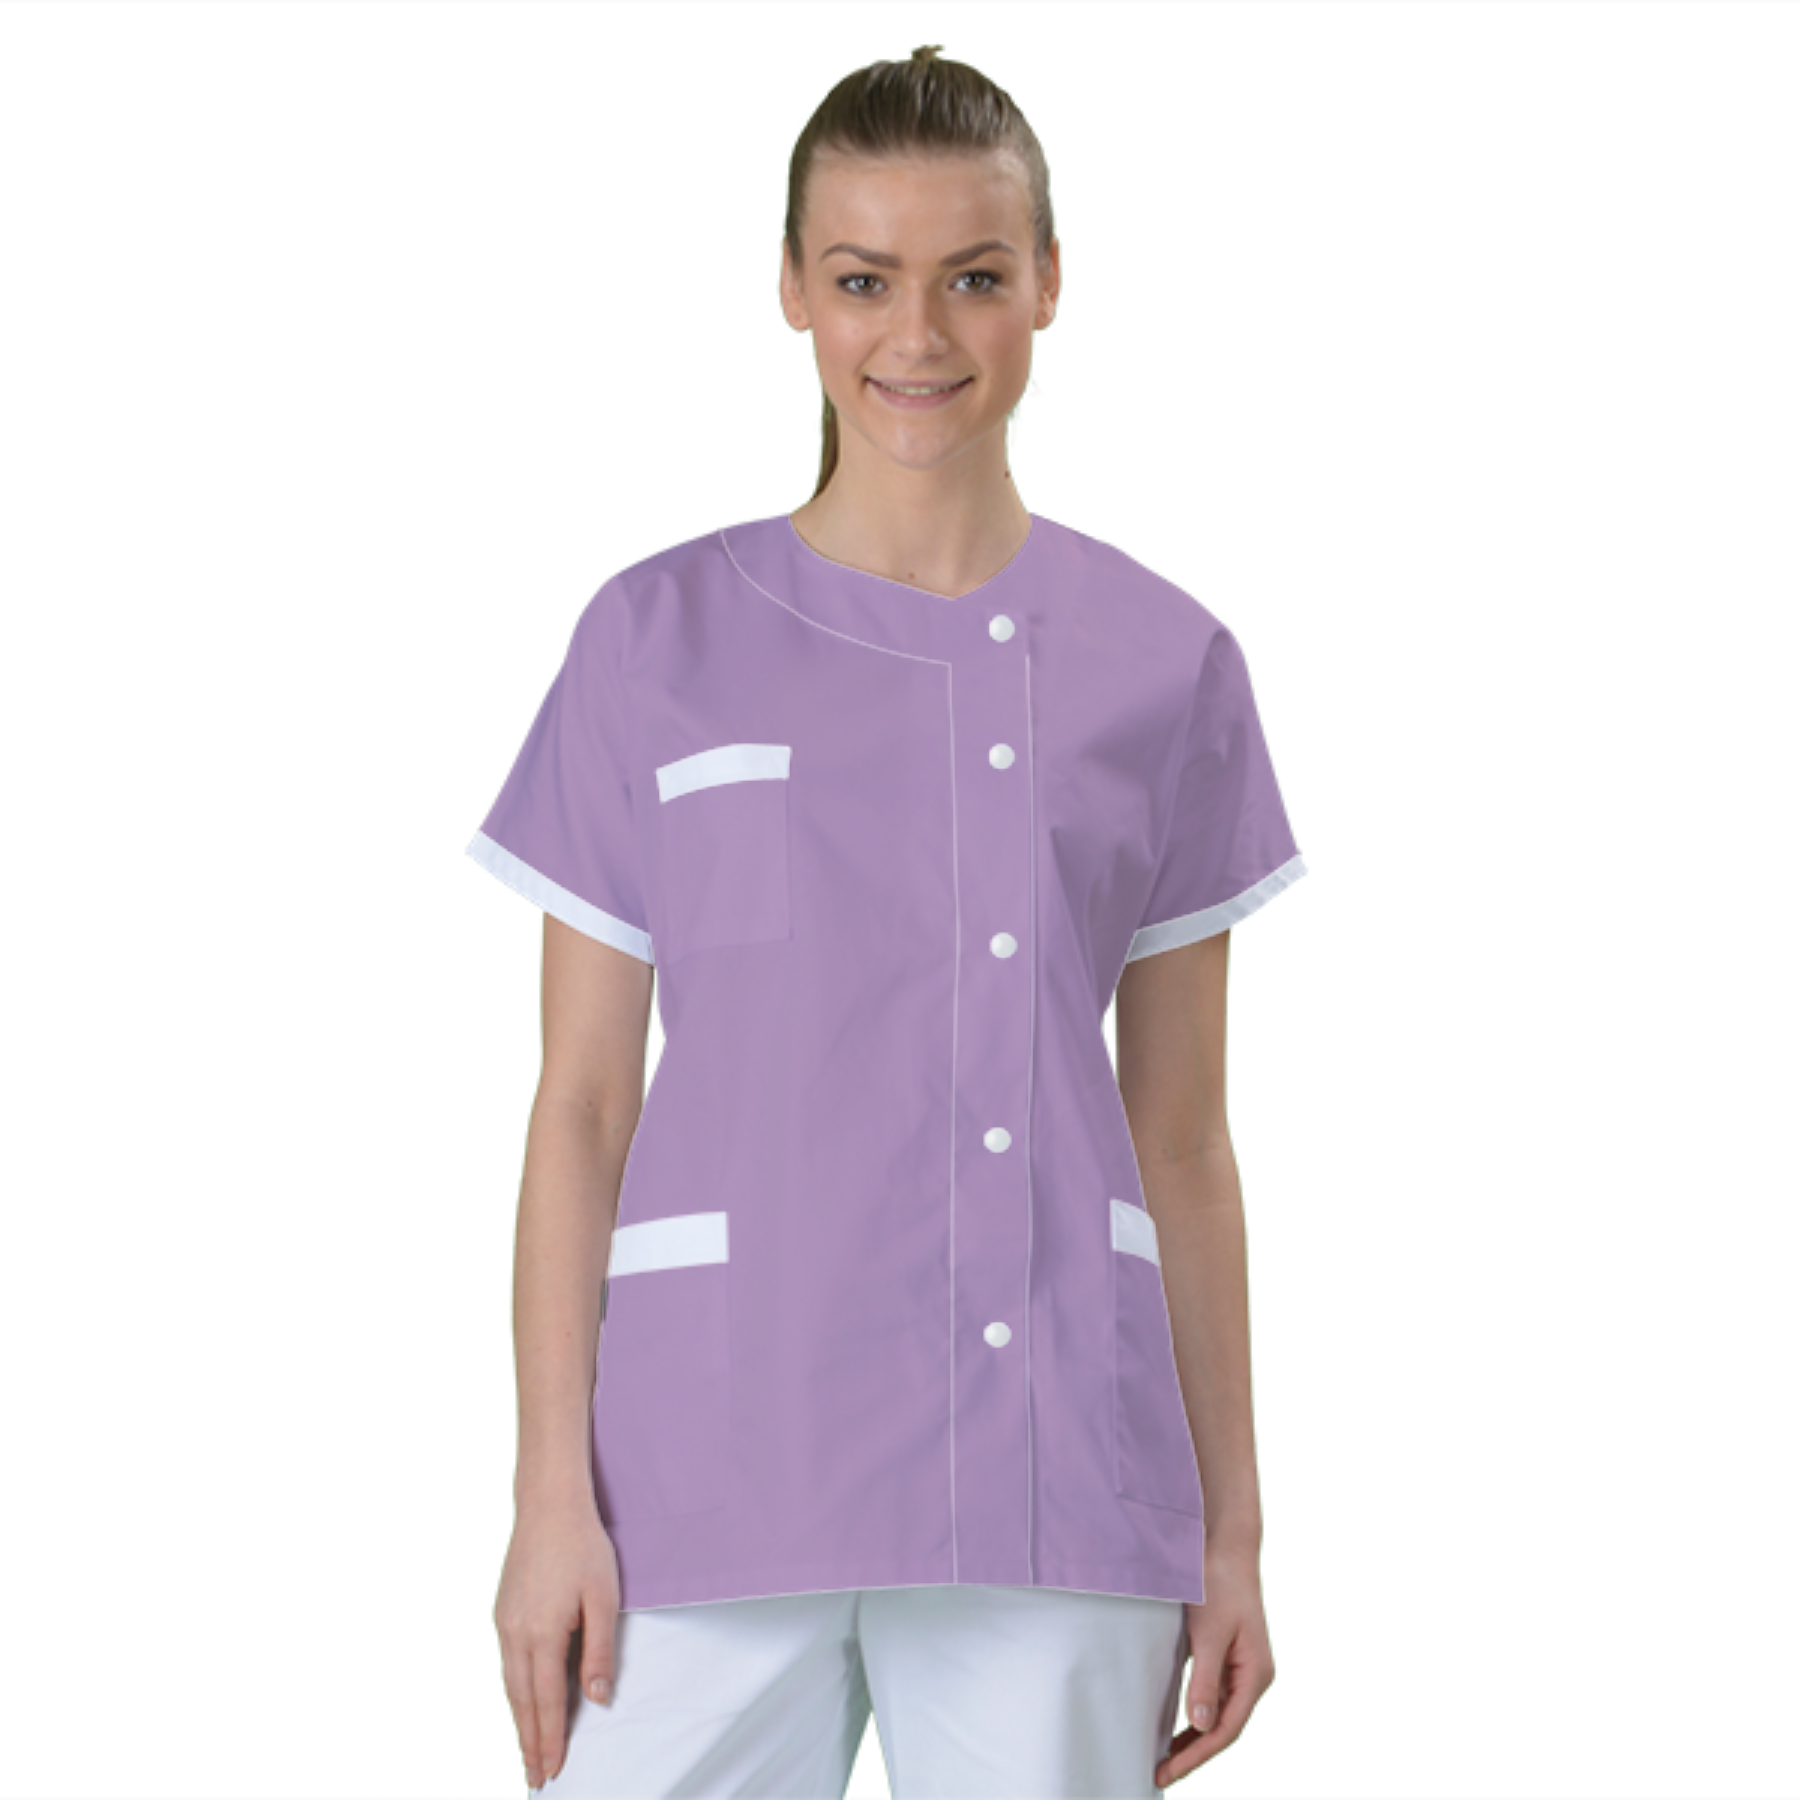 blouse-de-travail-personnalisee-tunique-medicale acheté - par Sorel - le 07-08-2020